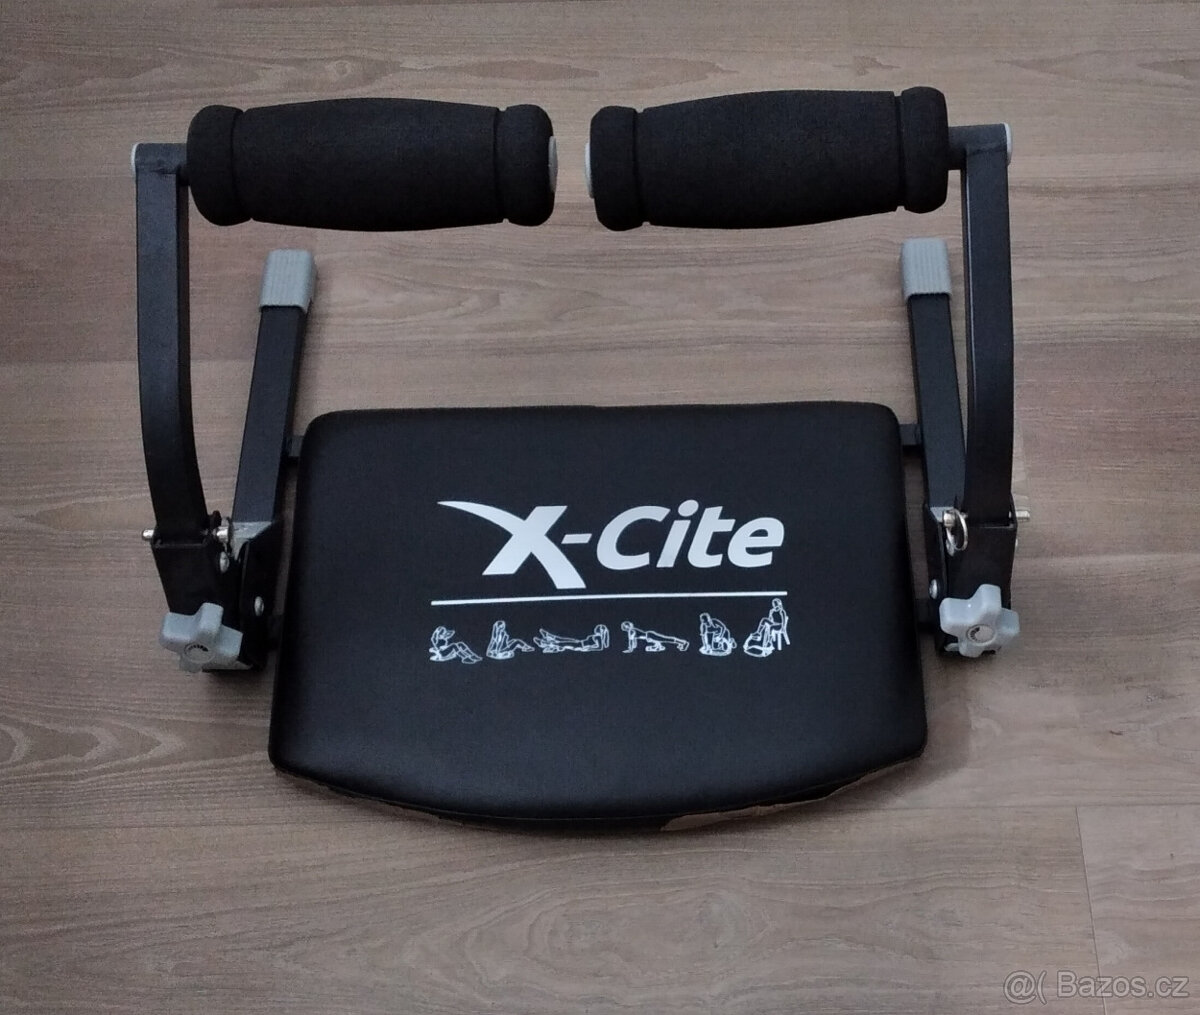 Posilovač břišních svalů X-Cite k domácímu použití